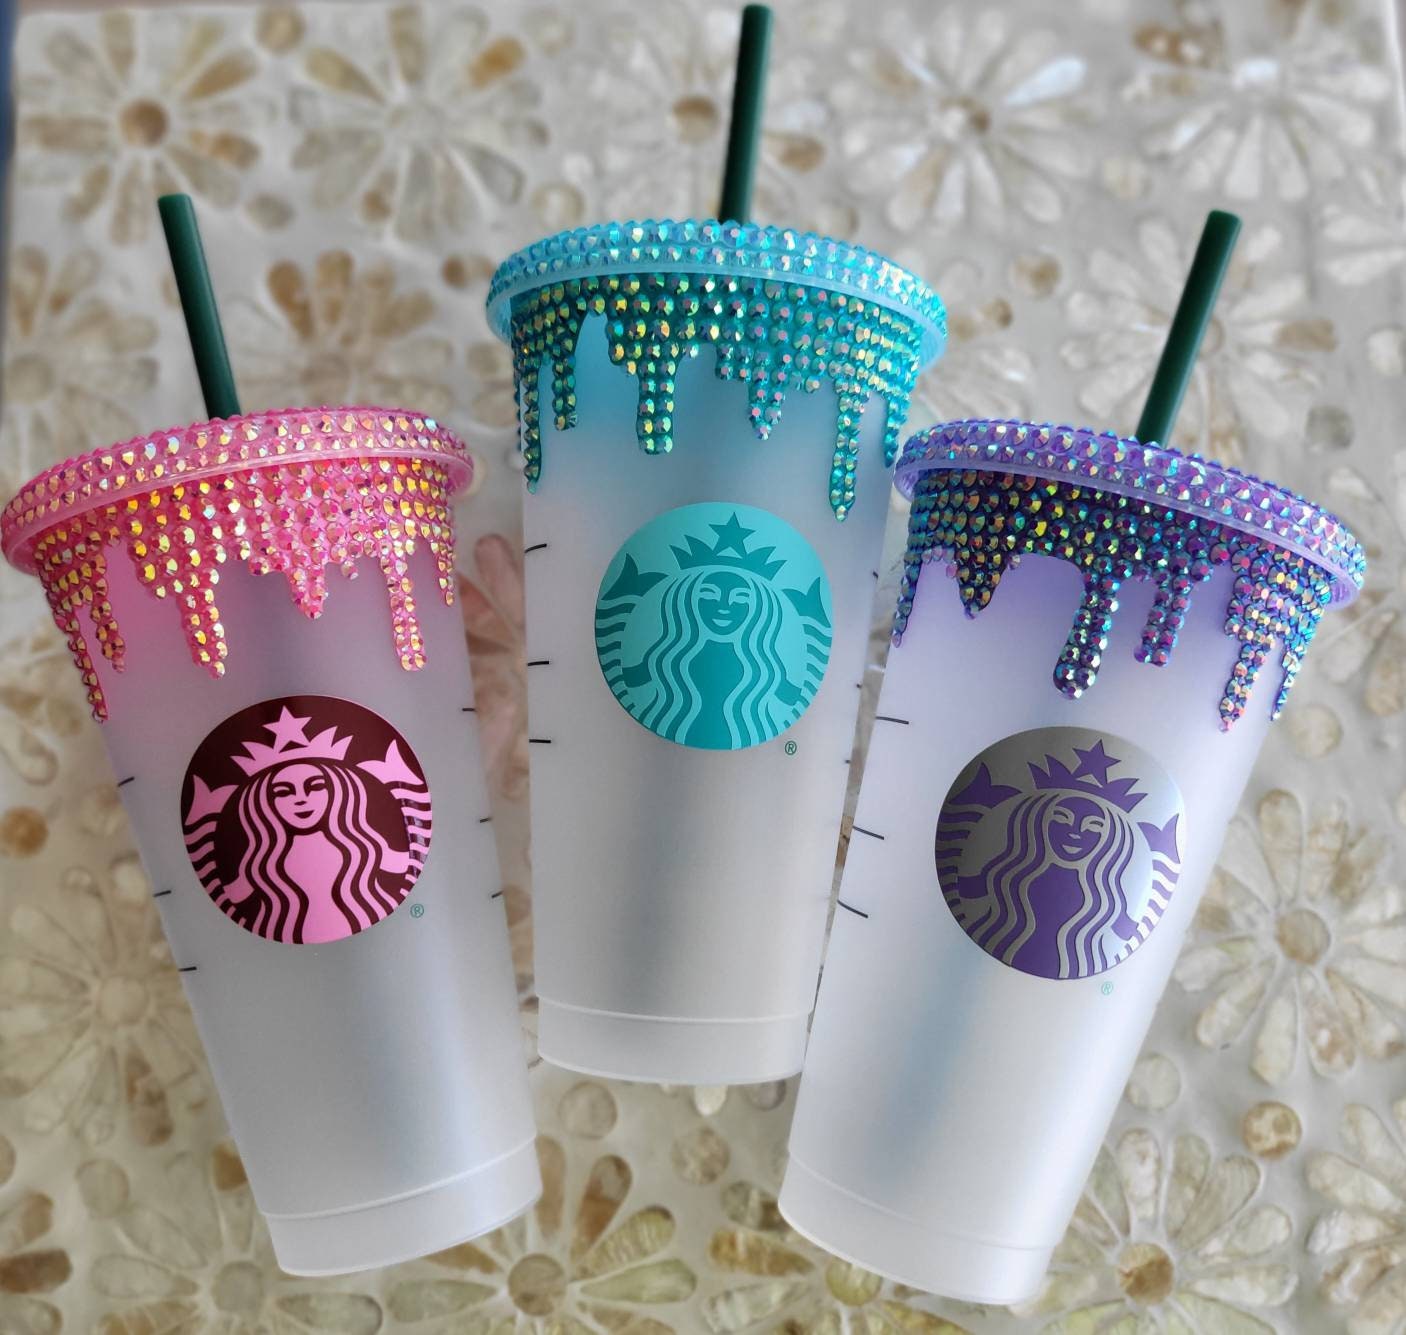 Starbucks 591ml/20oz Polar Bear Plastic Cup with Chain Sleeve – Ann Ann  Starbucks